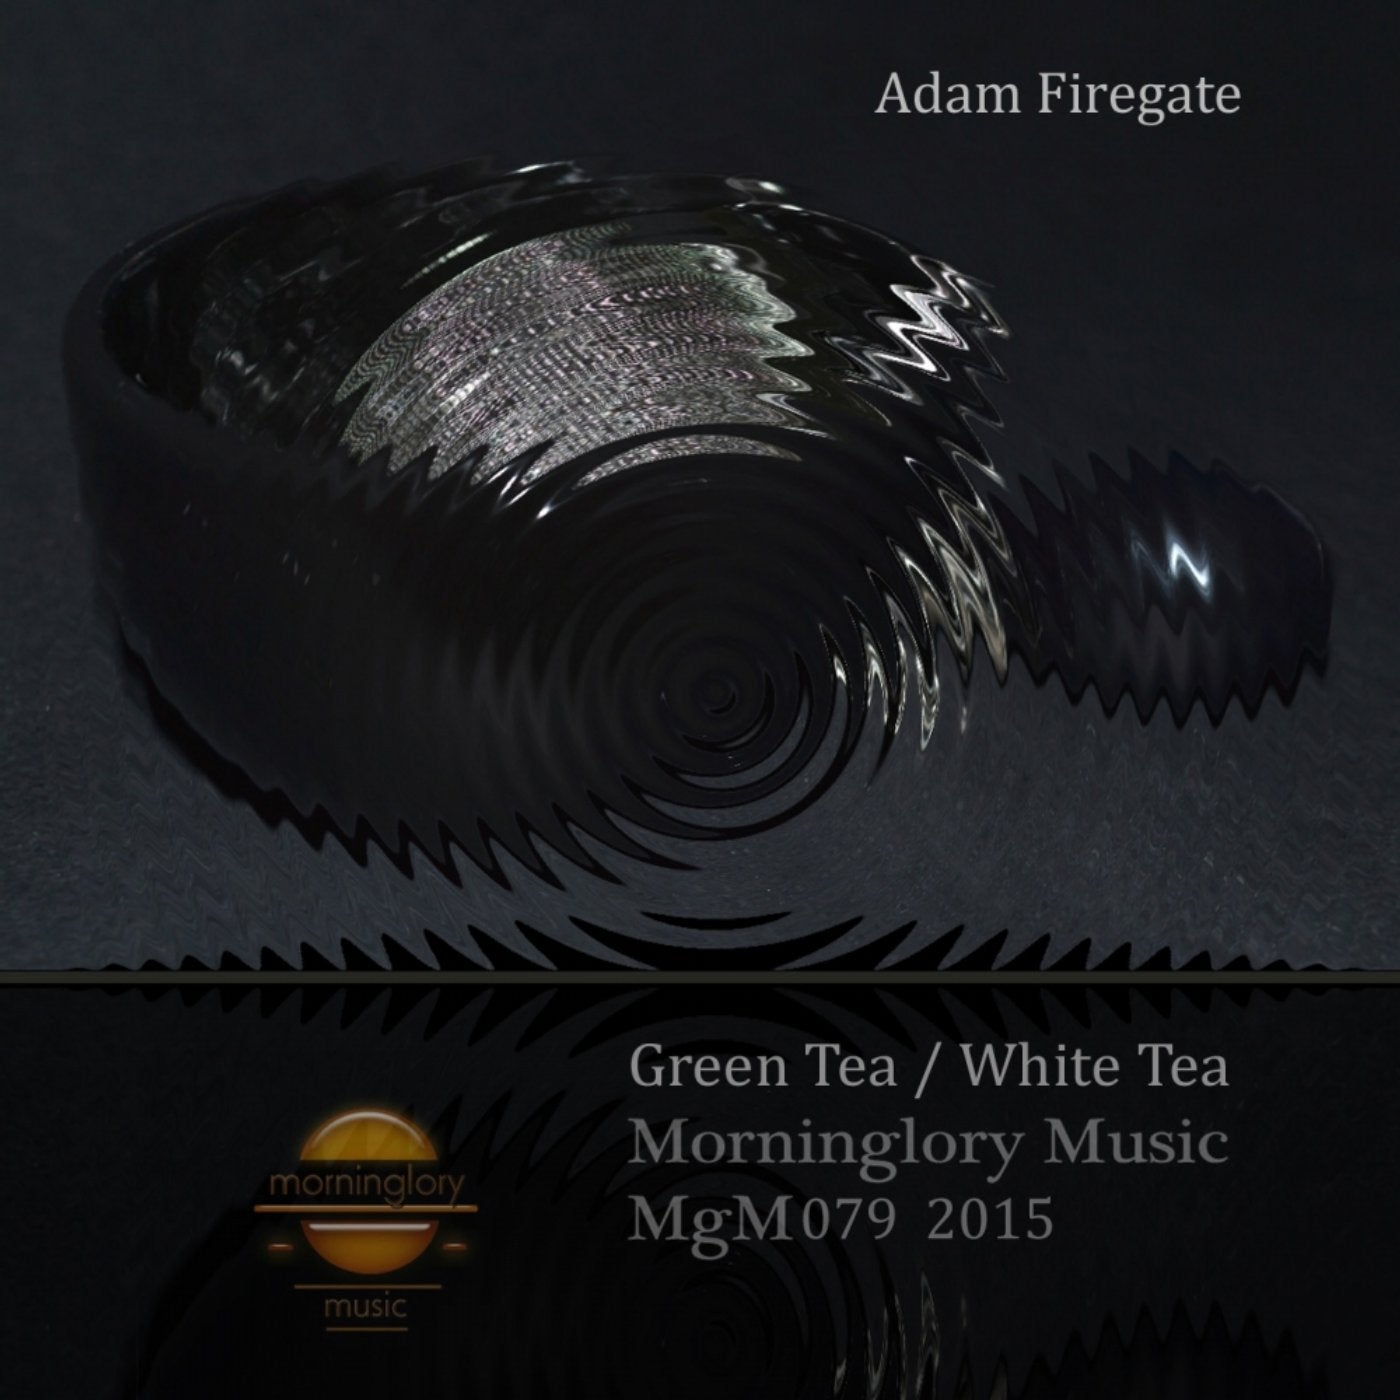 Green Tea / White Tea